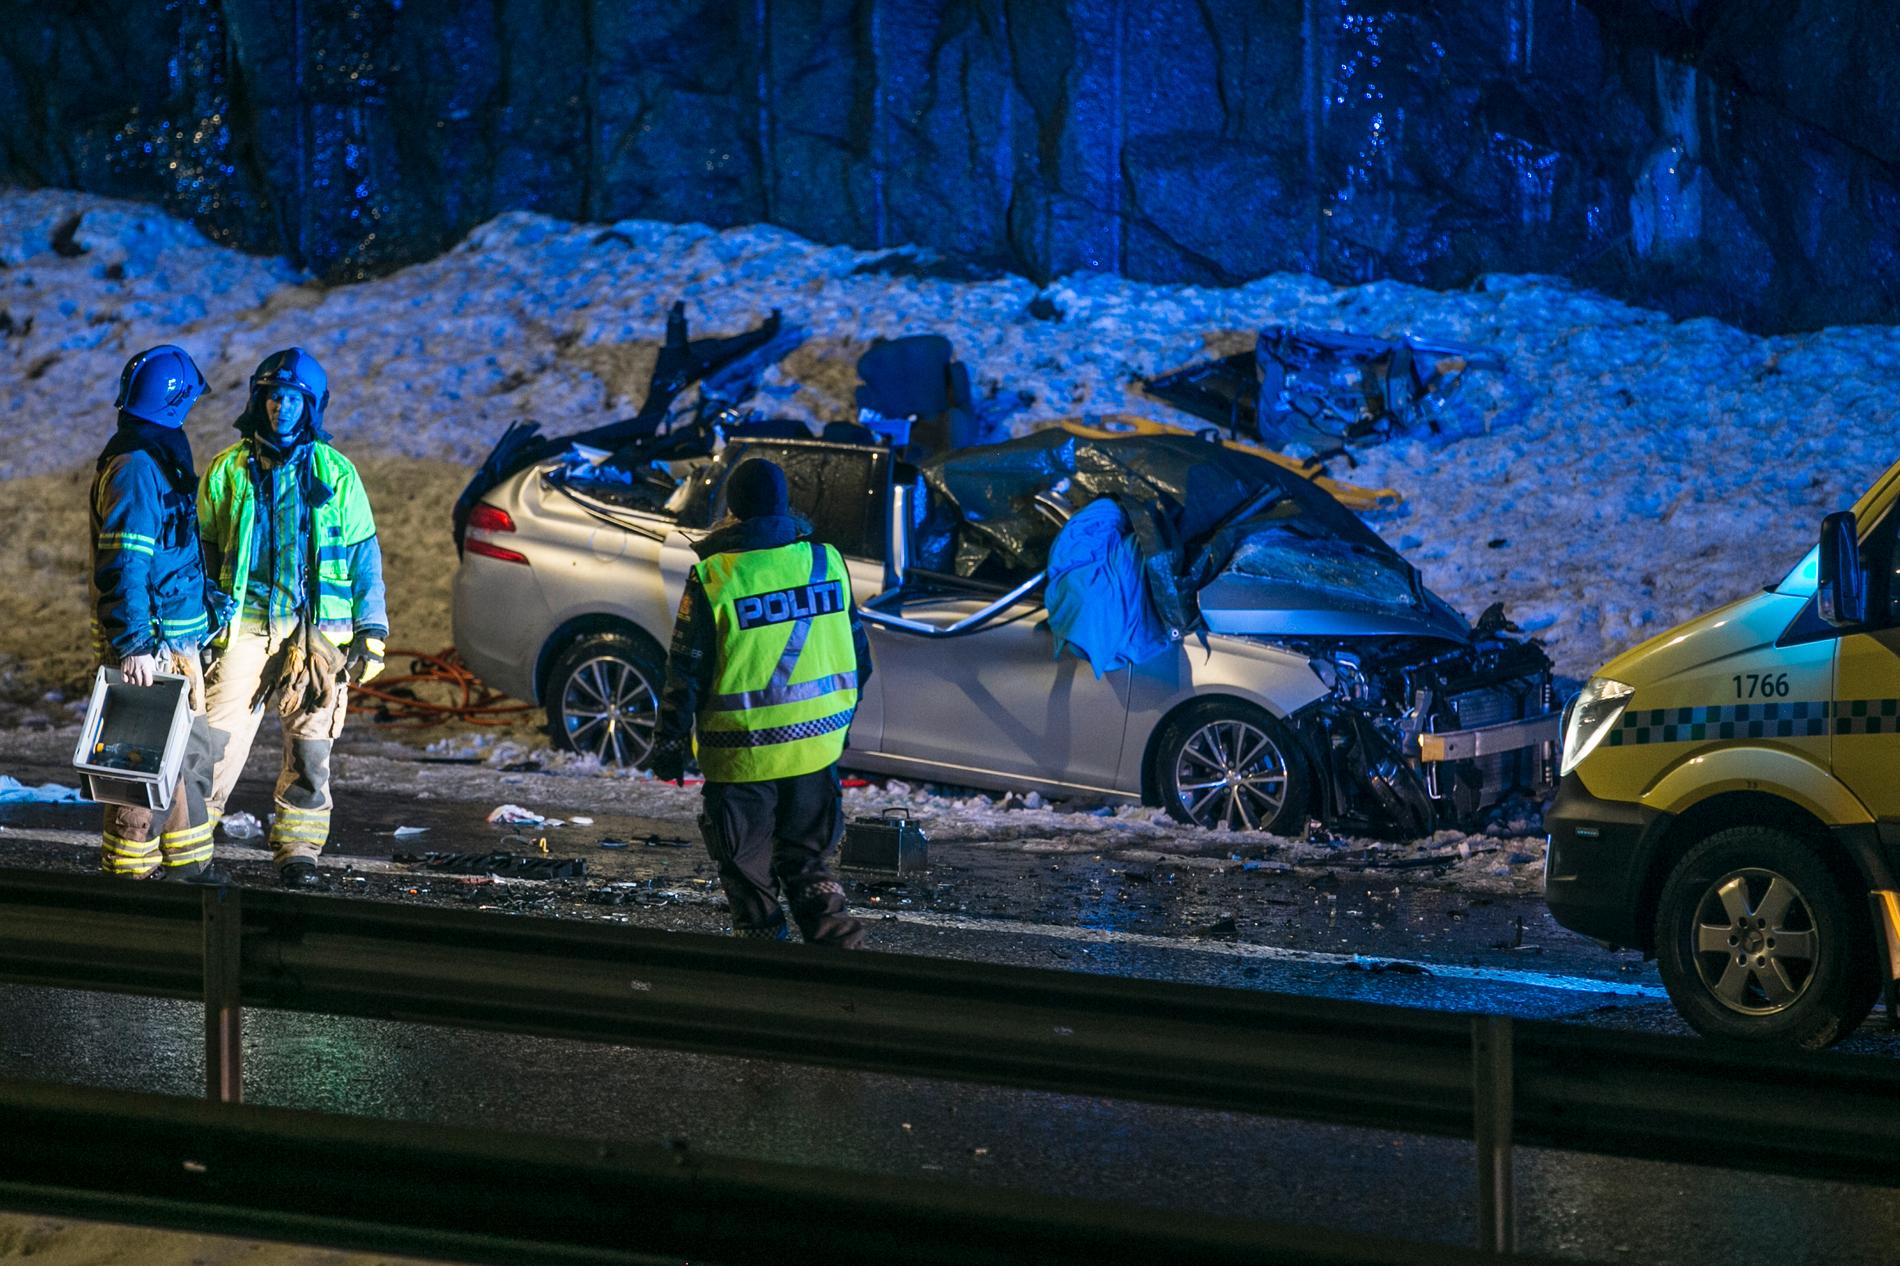 En 47 år gammel mann mistet livet i frontkollisjonen på E18 mellom Larvik og Porsgrunn. 21-åringen som kjørte den andre bilen er fortsatt på sykehus og blir ikke varetektsfengslet.
Foto: Trond Reidar Teigen / NTB scanpix